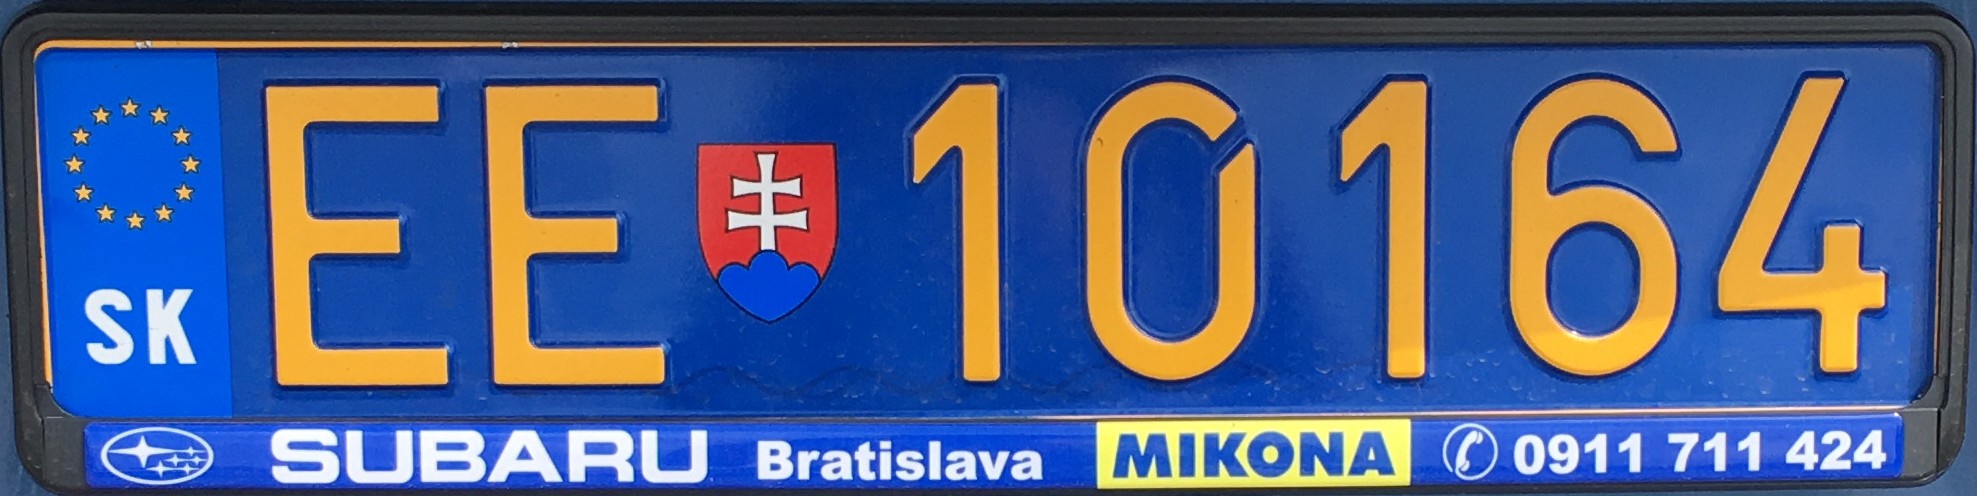 Slovenská diplomatická registrační značka